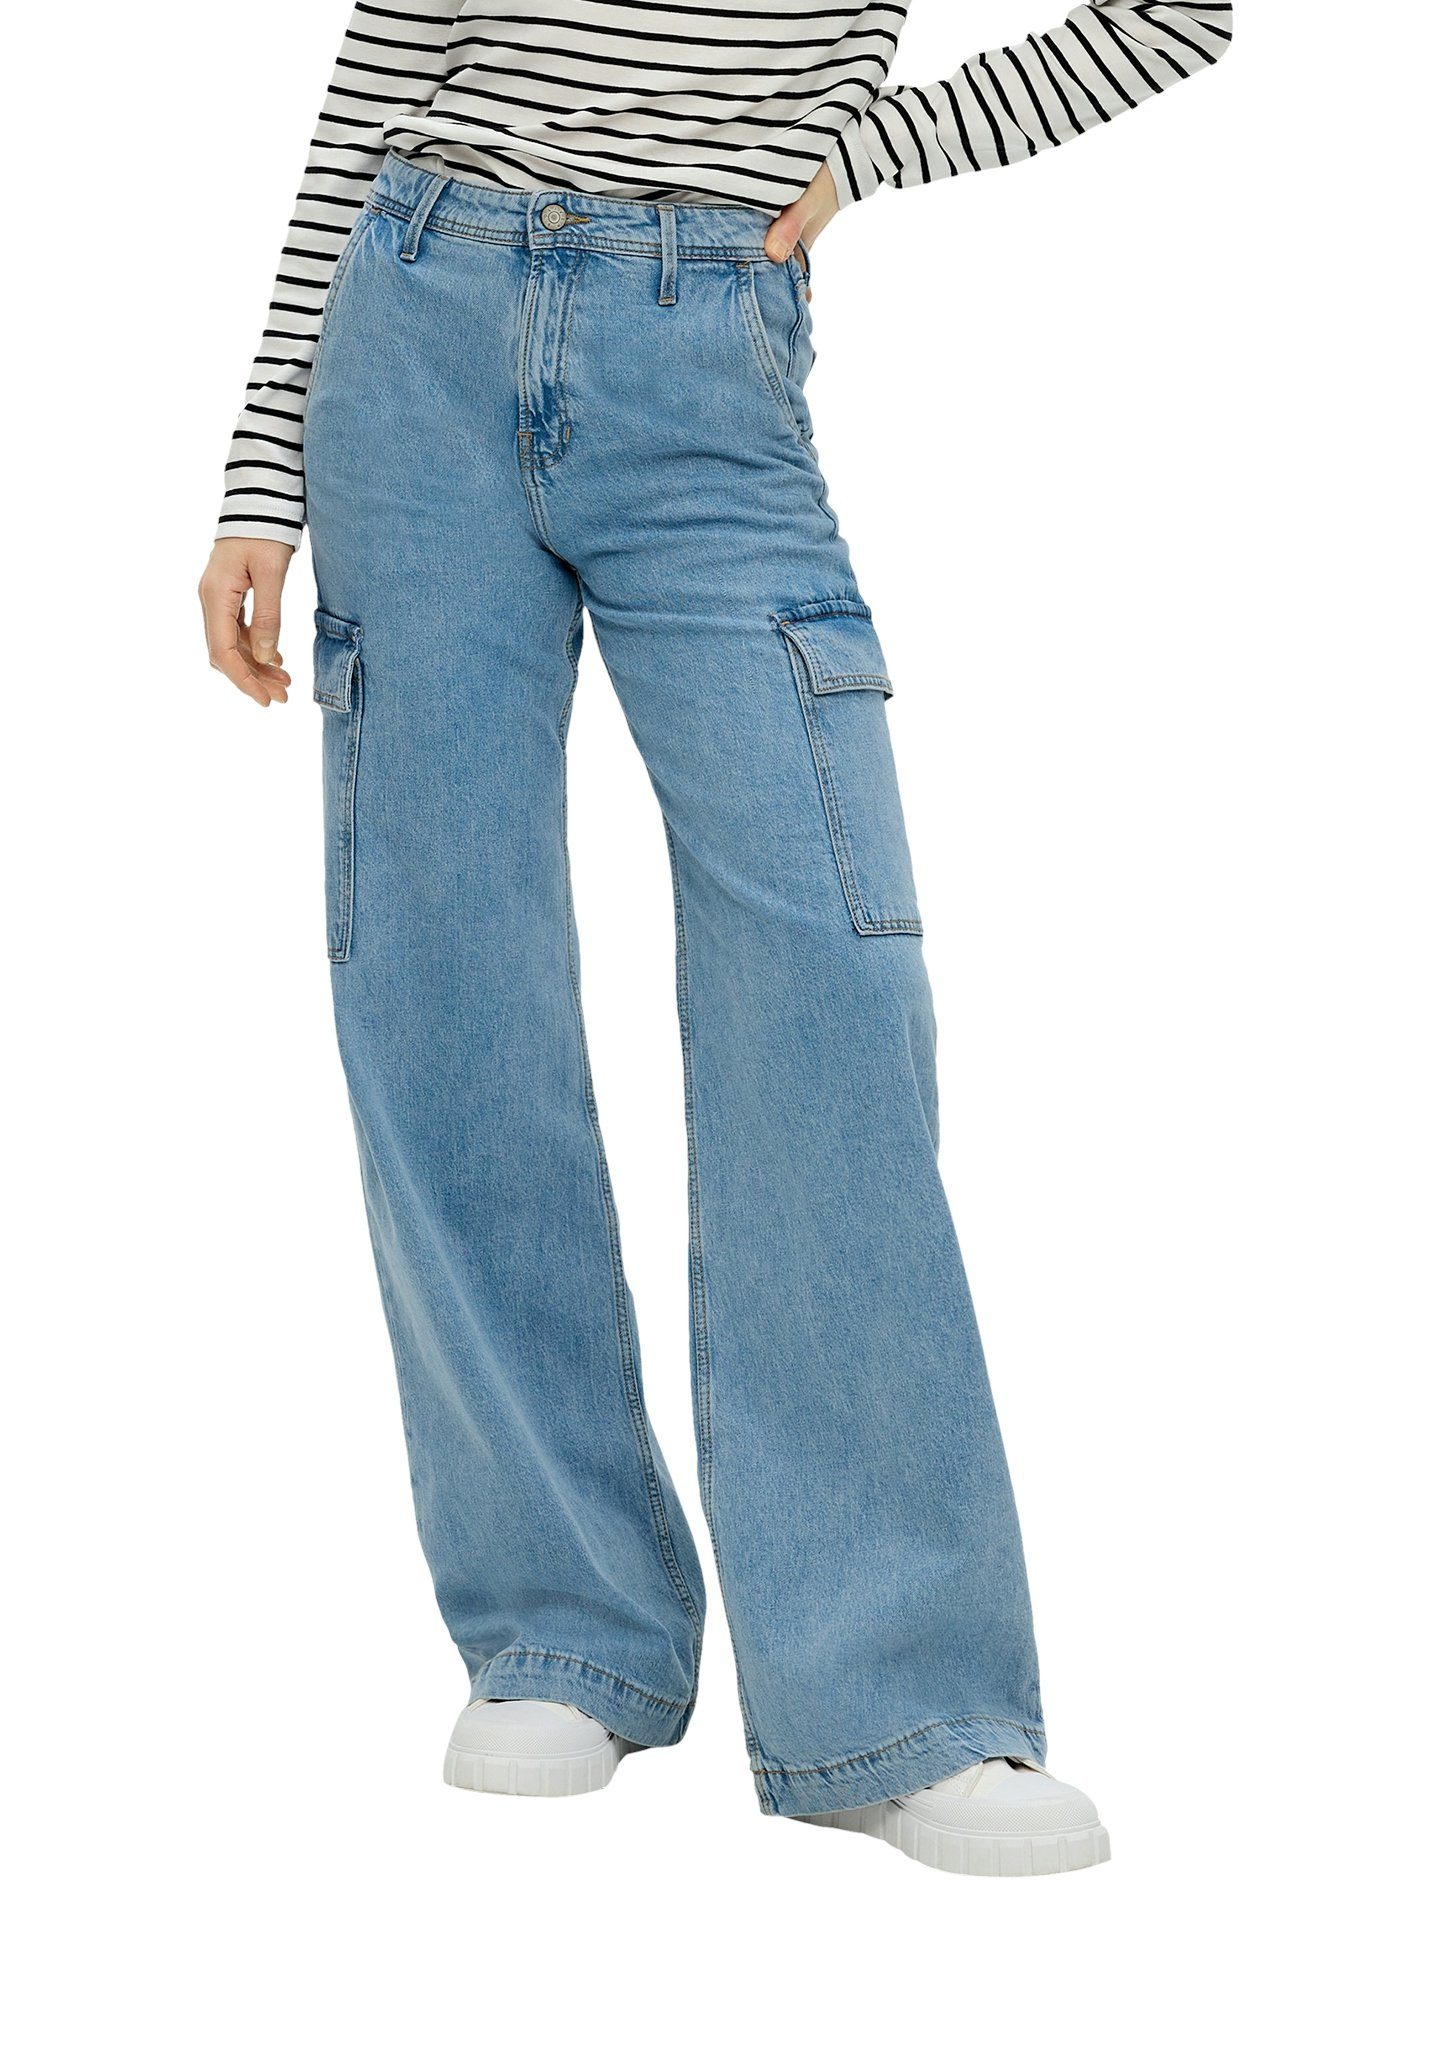 S.Oliver regular jeans light blue denim